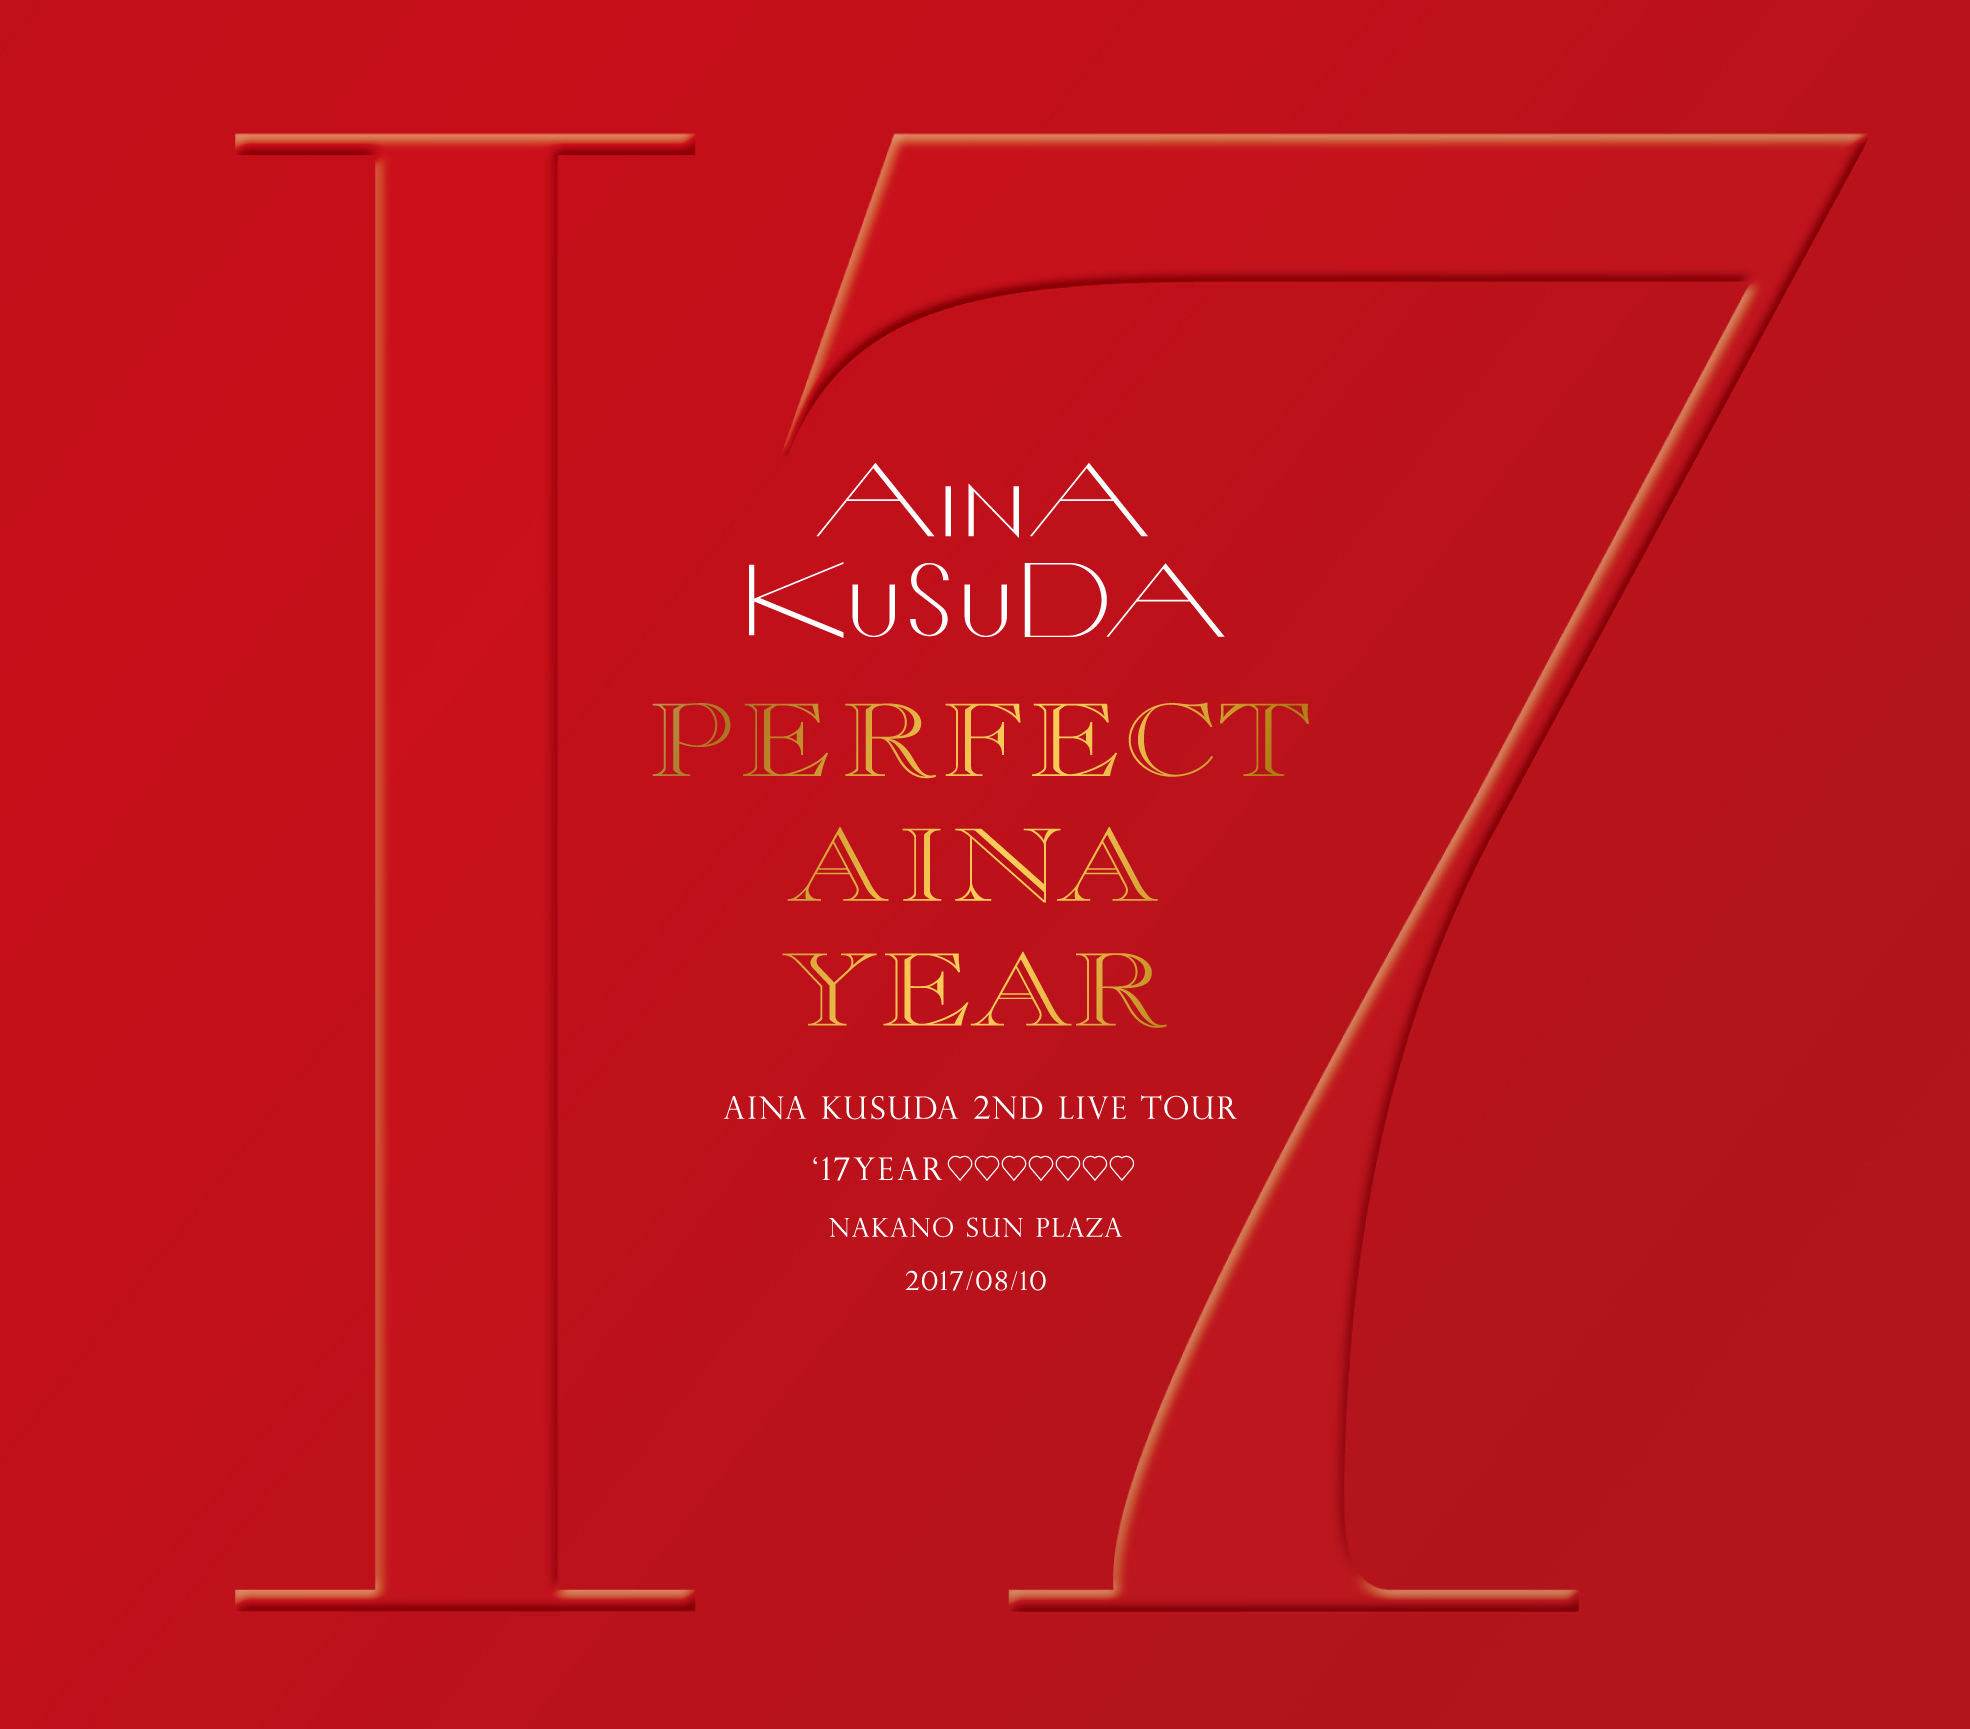 『PERFECT AINA YEAR   Aina Kusuda 2nd LIVE TOUR‘17 YEAR♡♡♡♡♡♡♡ ＠Nakano Sun Plaza 20170810』